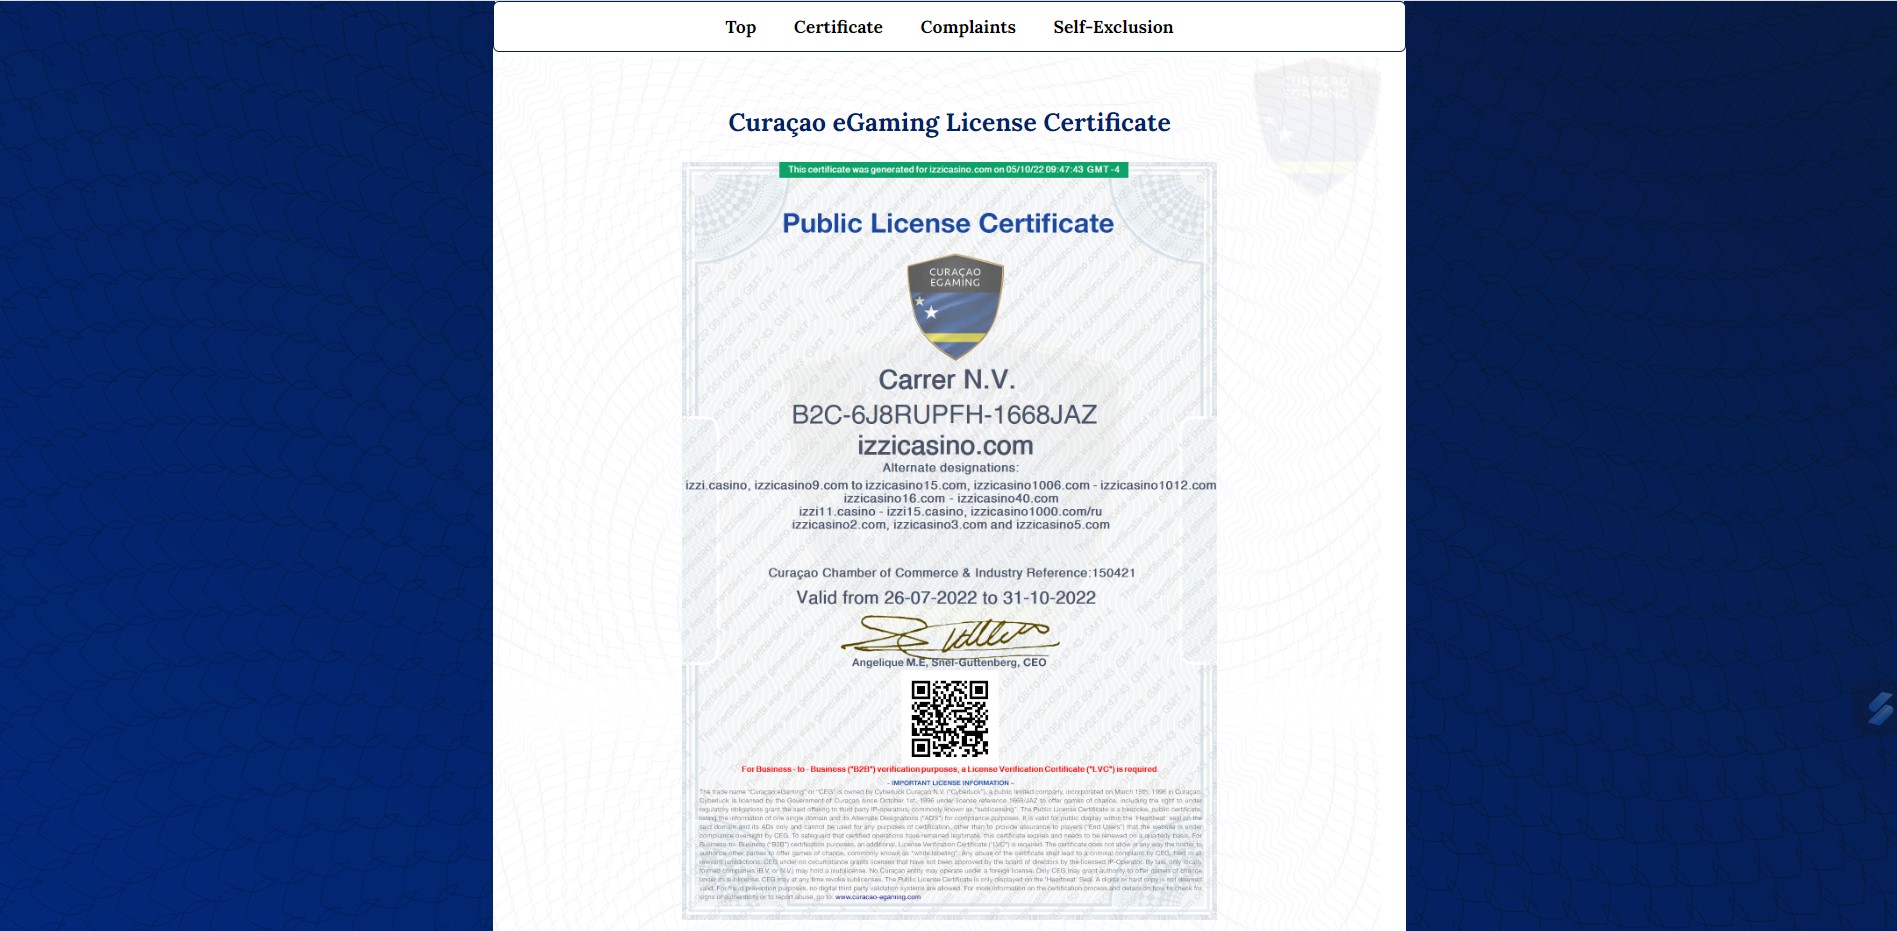 Curacao eGambling License